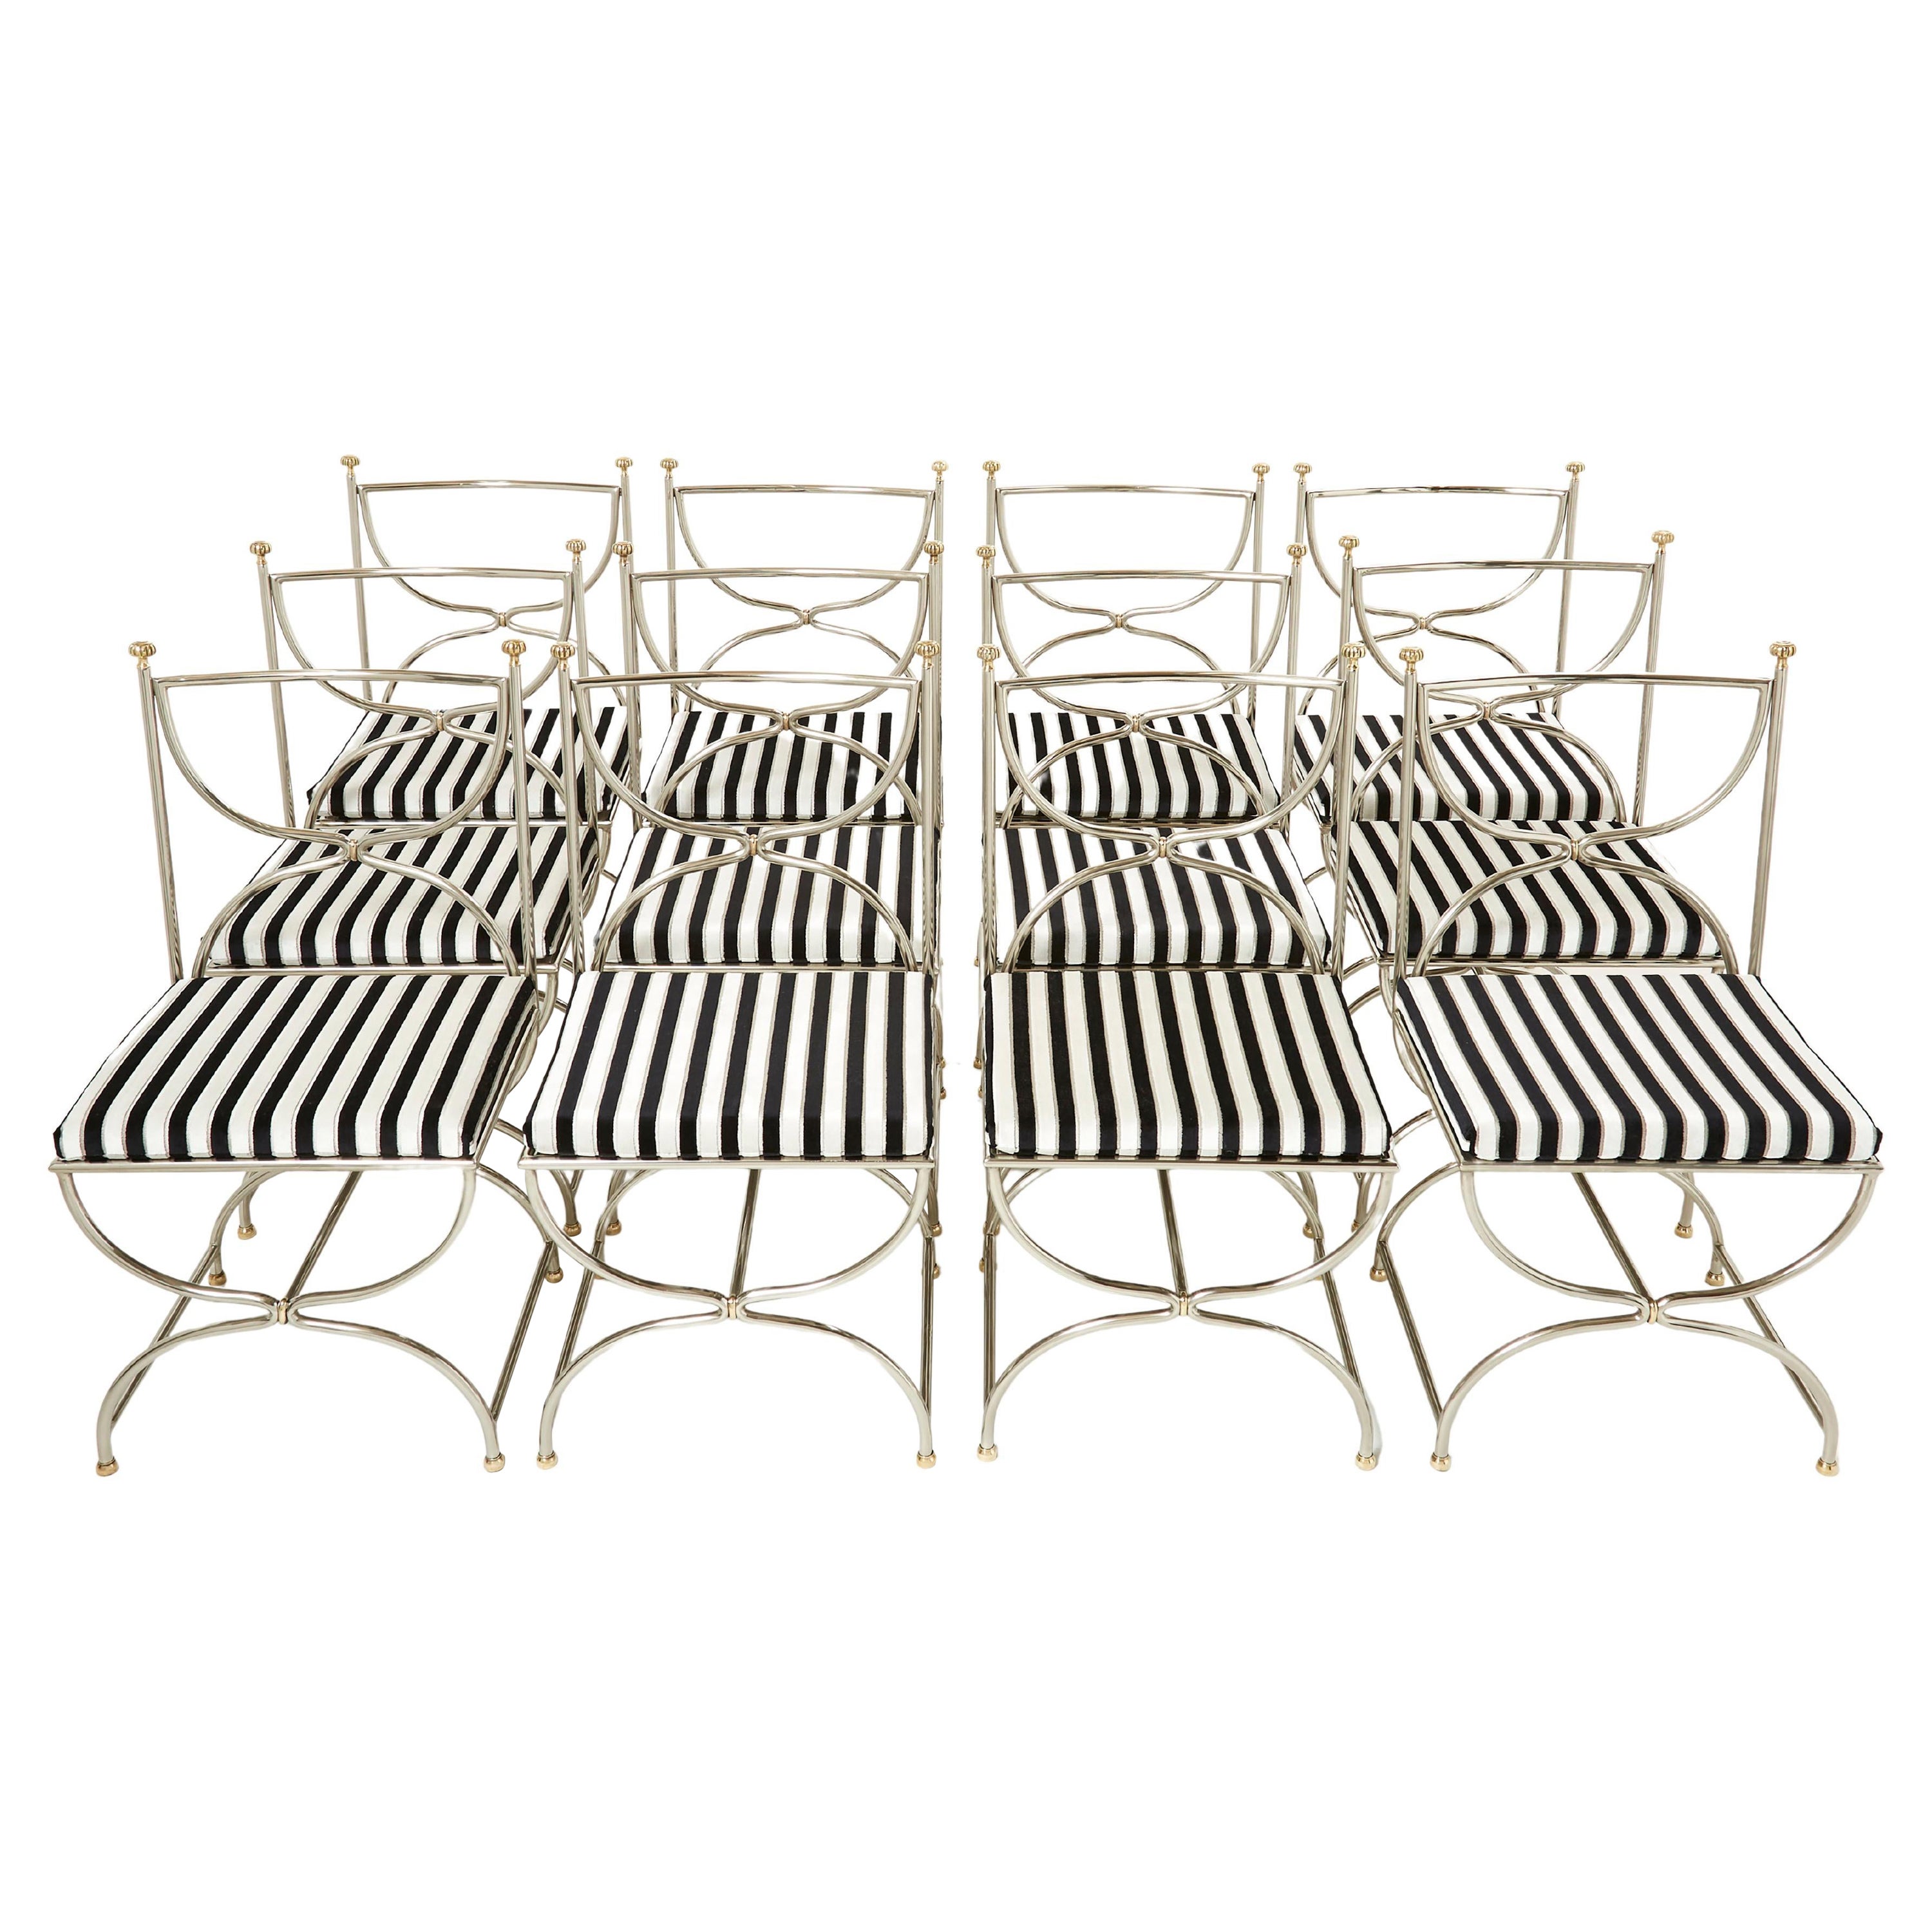 Ensemble de douze chaises Curule en acier, laiton et velours par Maison Jansen, années 1960